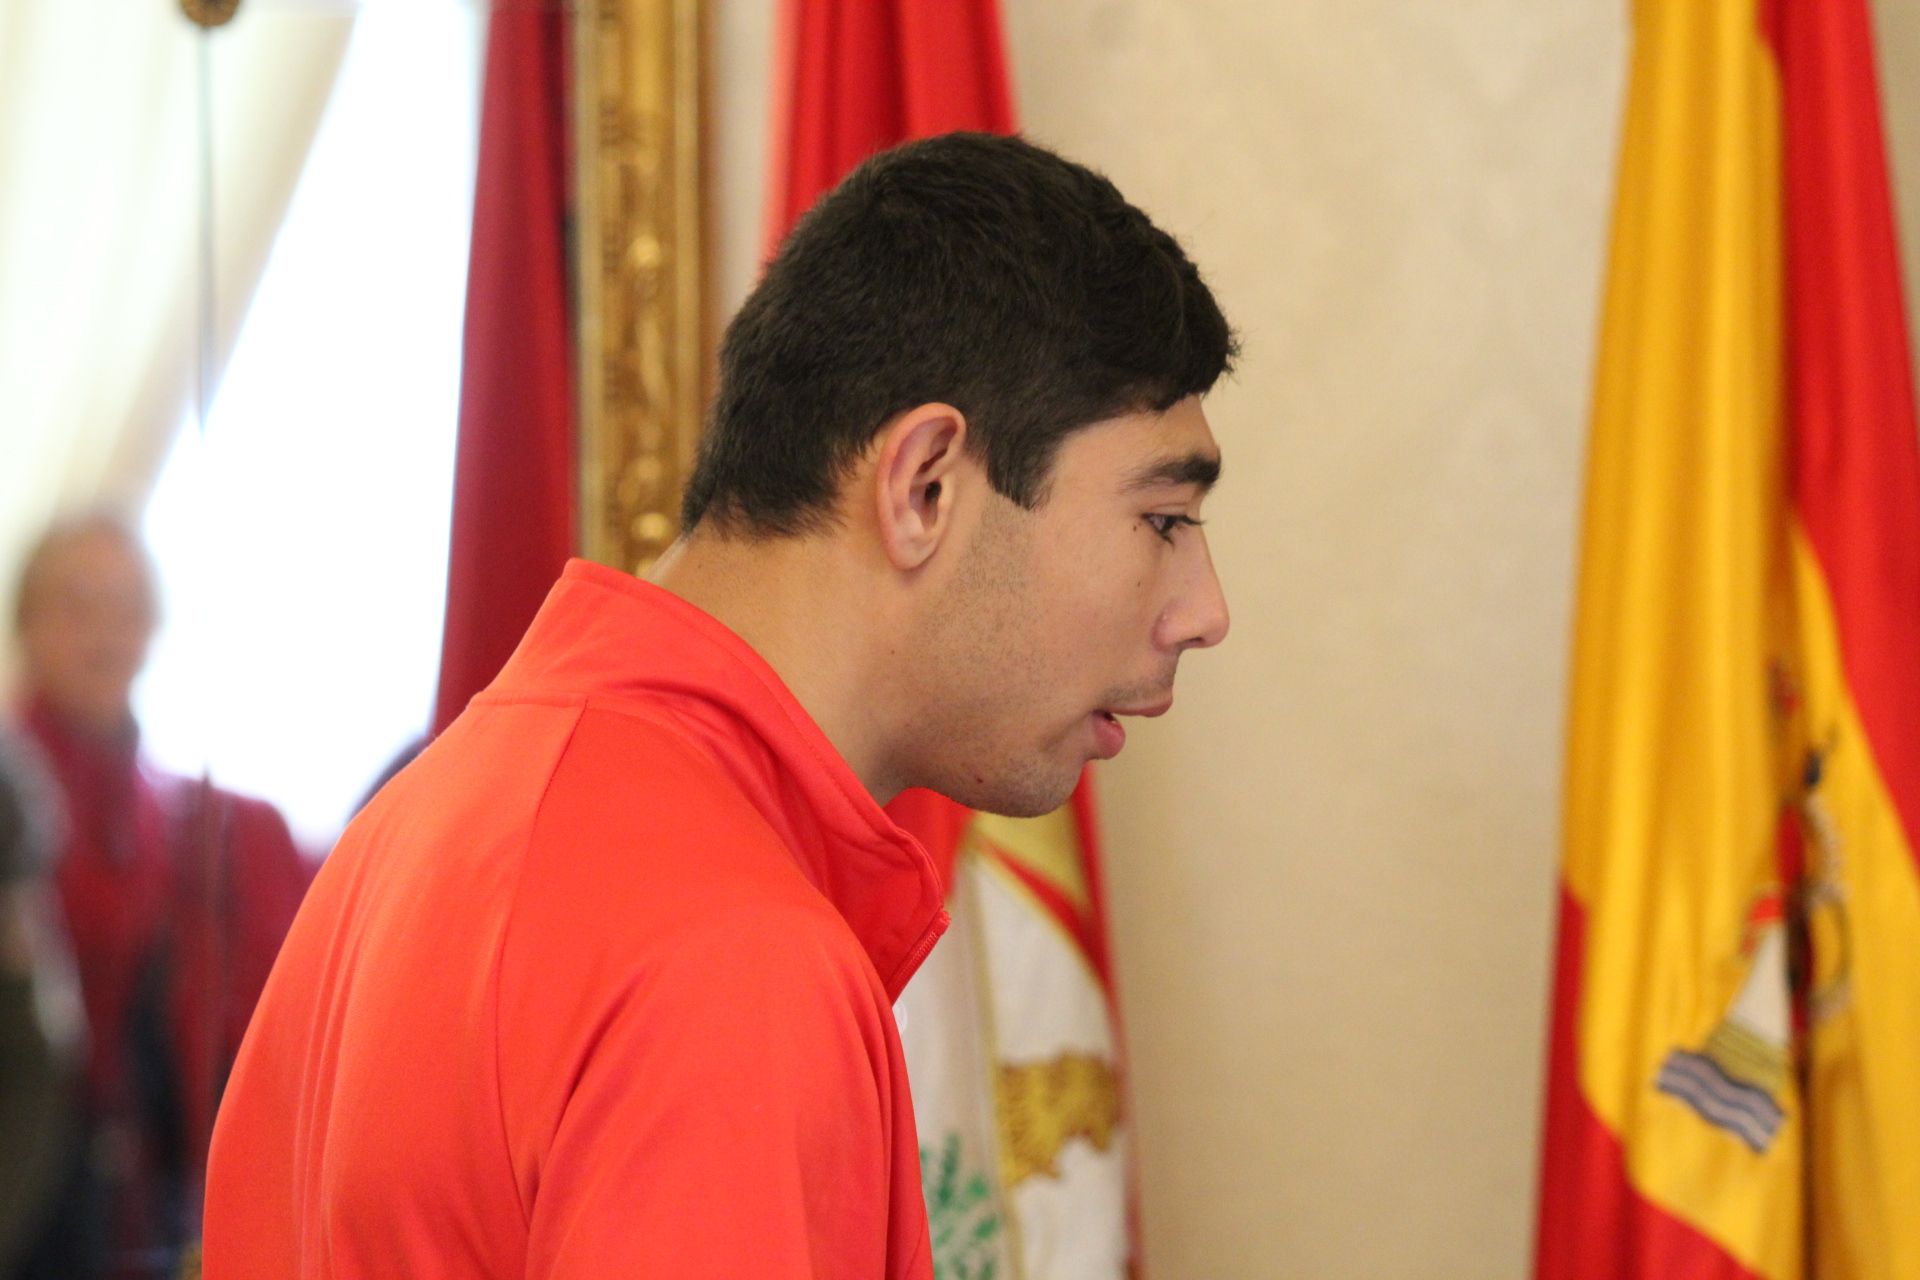 El alcalde de Salamanca, Carlos García Carbayo, recibe a Alberto Mangas, medalla de oro en el Campeonato de España Liberty de promesas paralímpicas de atletismo